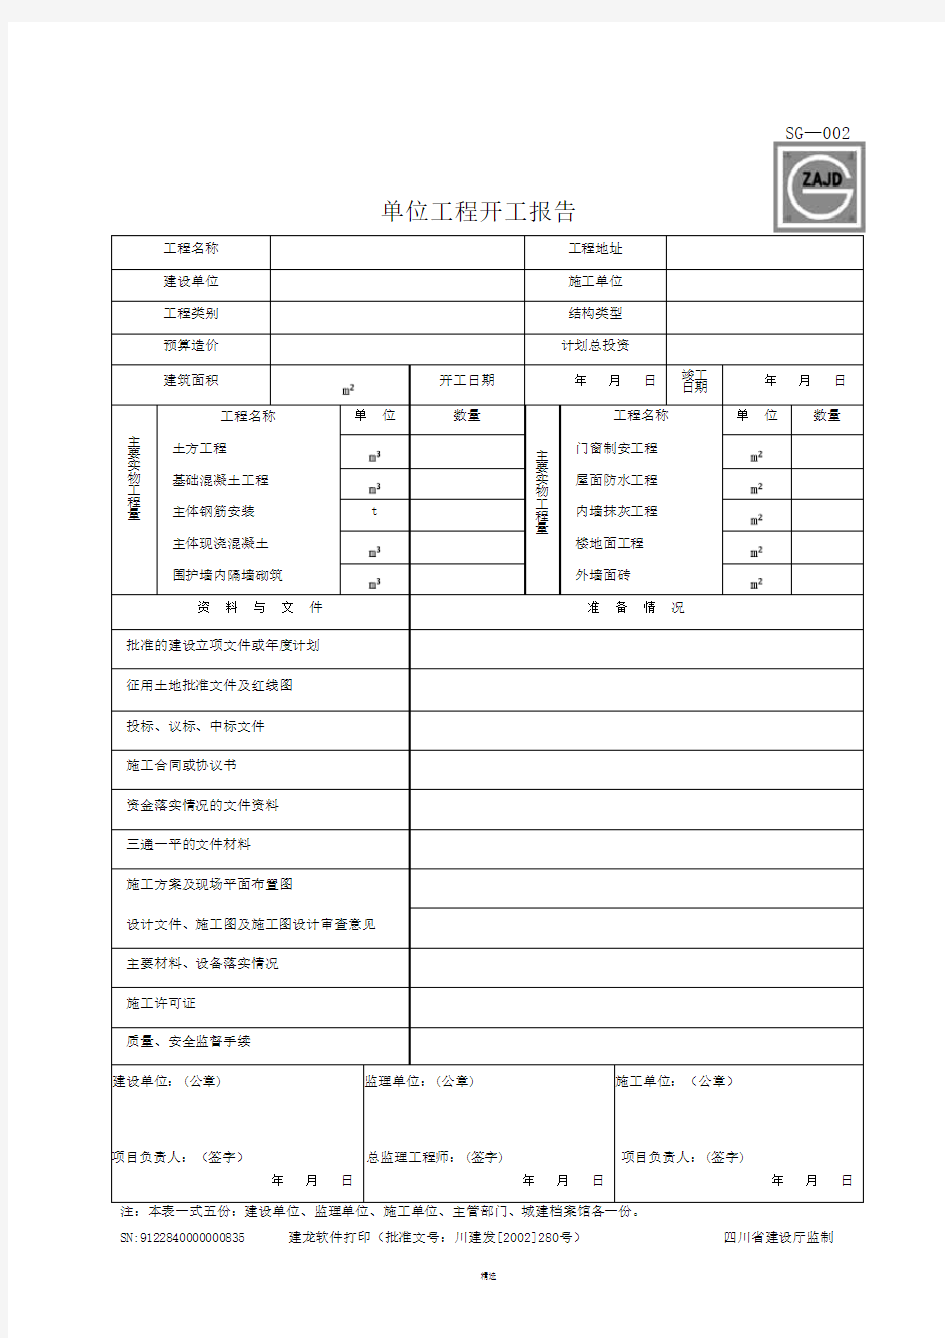 四川省建筑施工资料表格(施工单位用表)(全套)